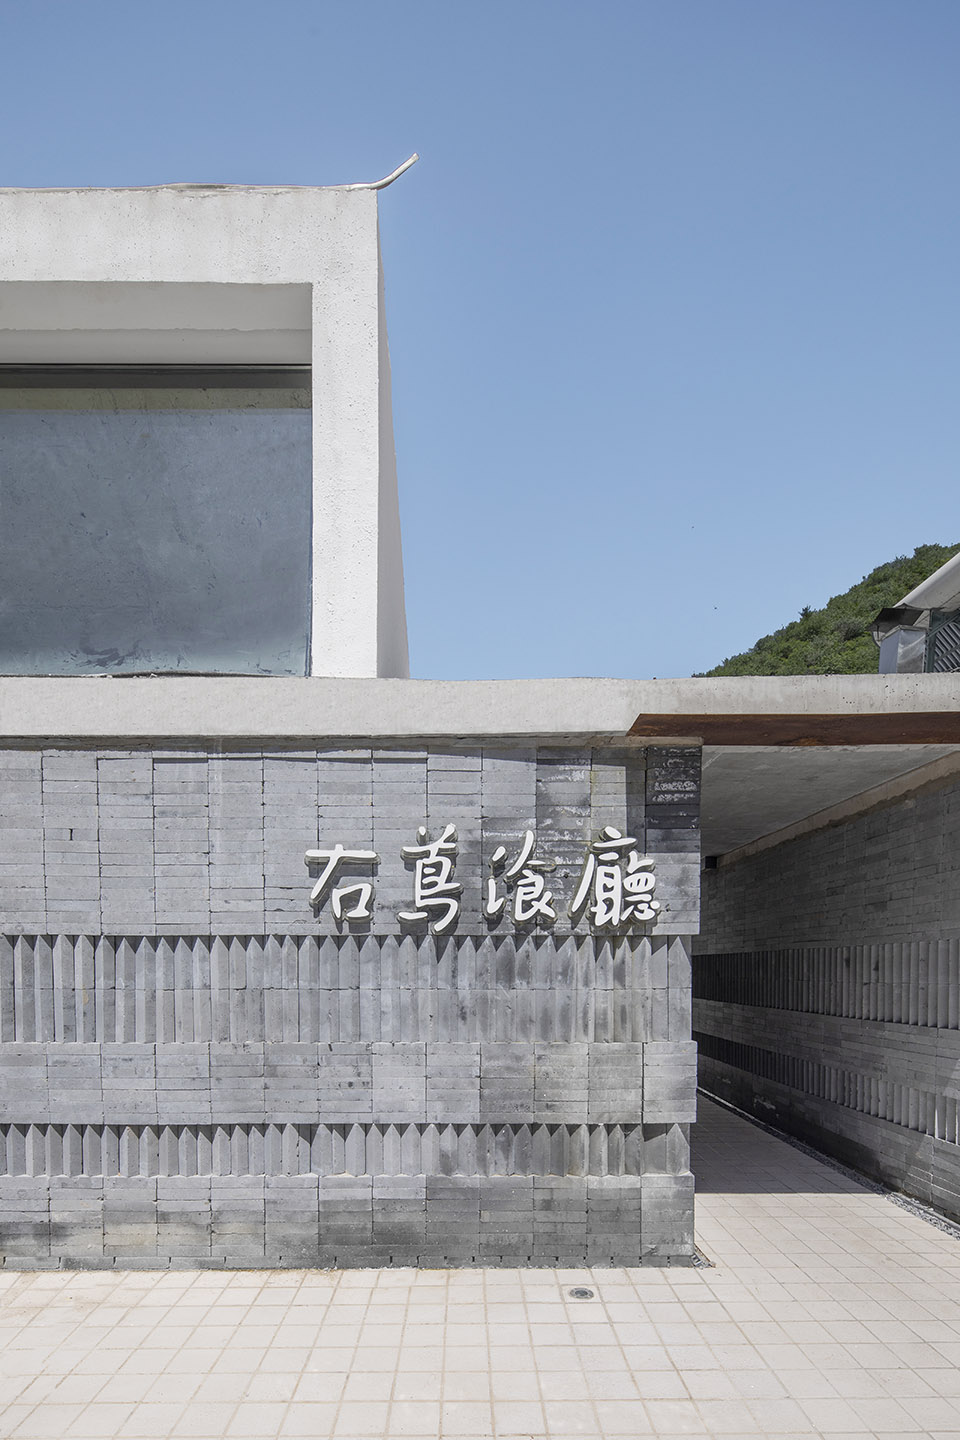 右蔦乡村庭院餐厅，北京/丰富材料打造活力乡村就餐空间-7